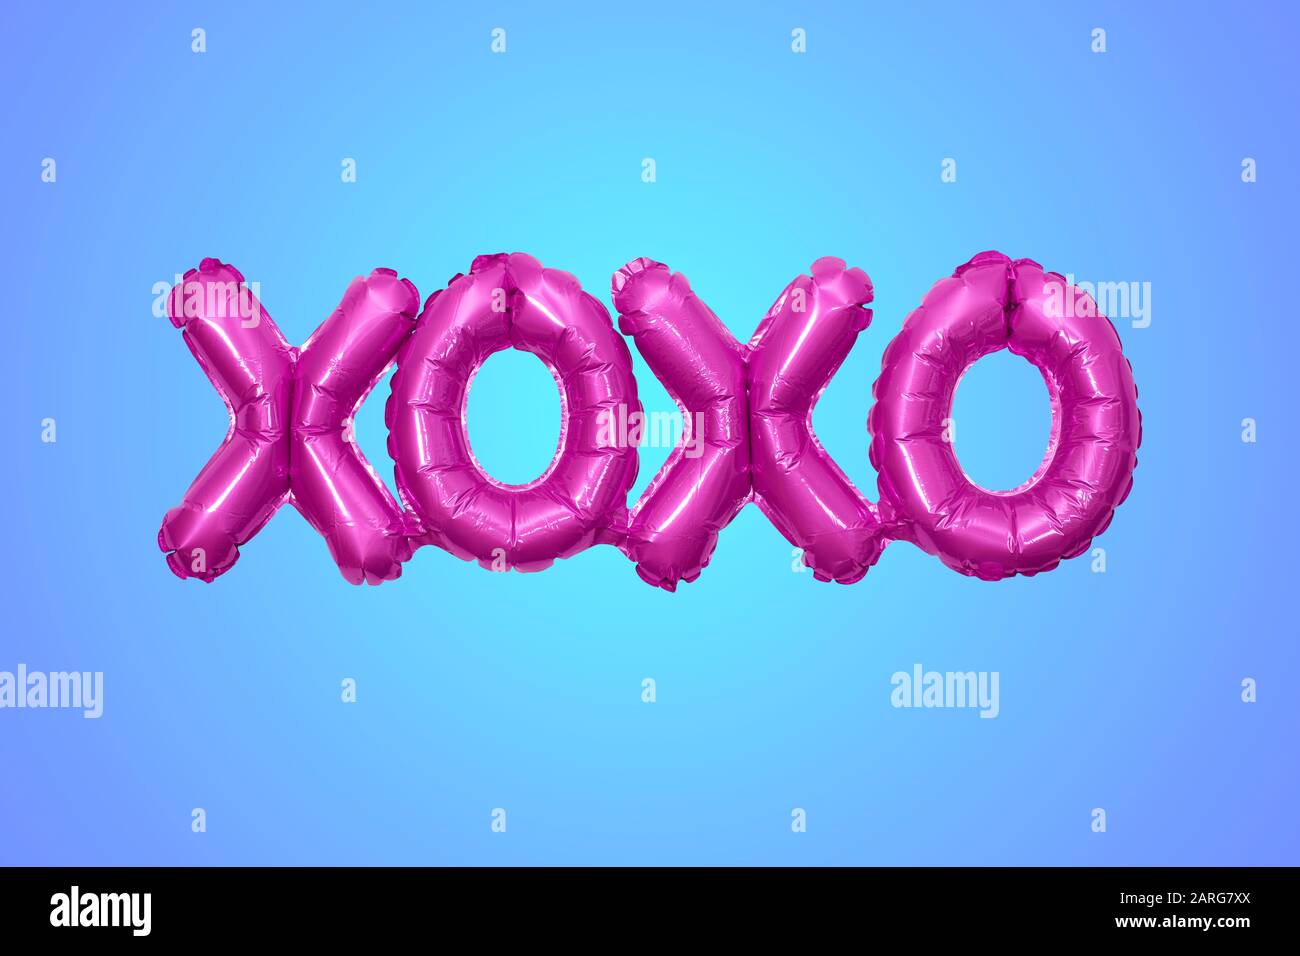 Globo inflado que forma las letras XOXO significa abrazos y besos Foto de stock